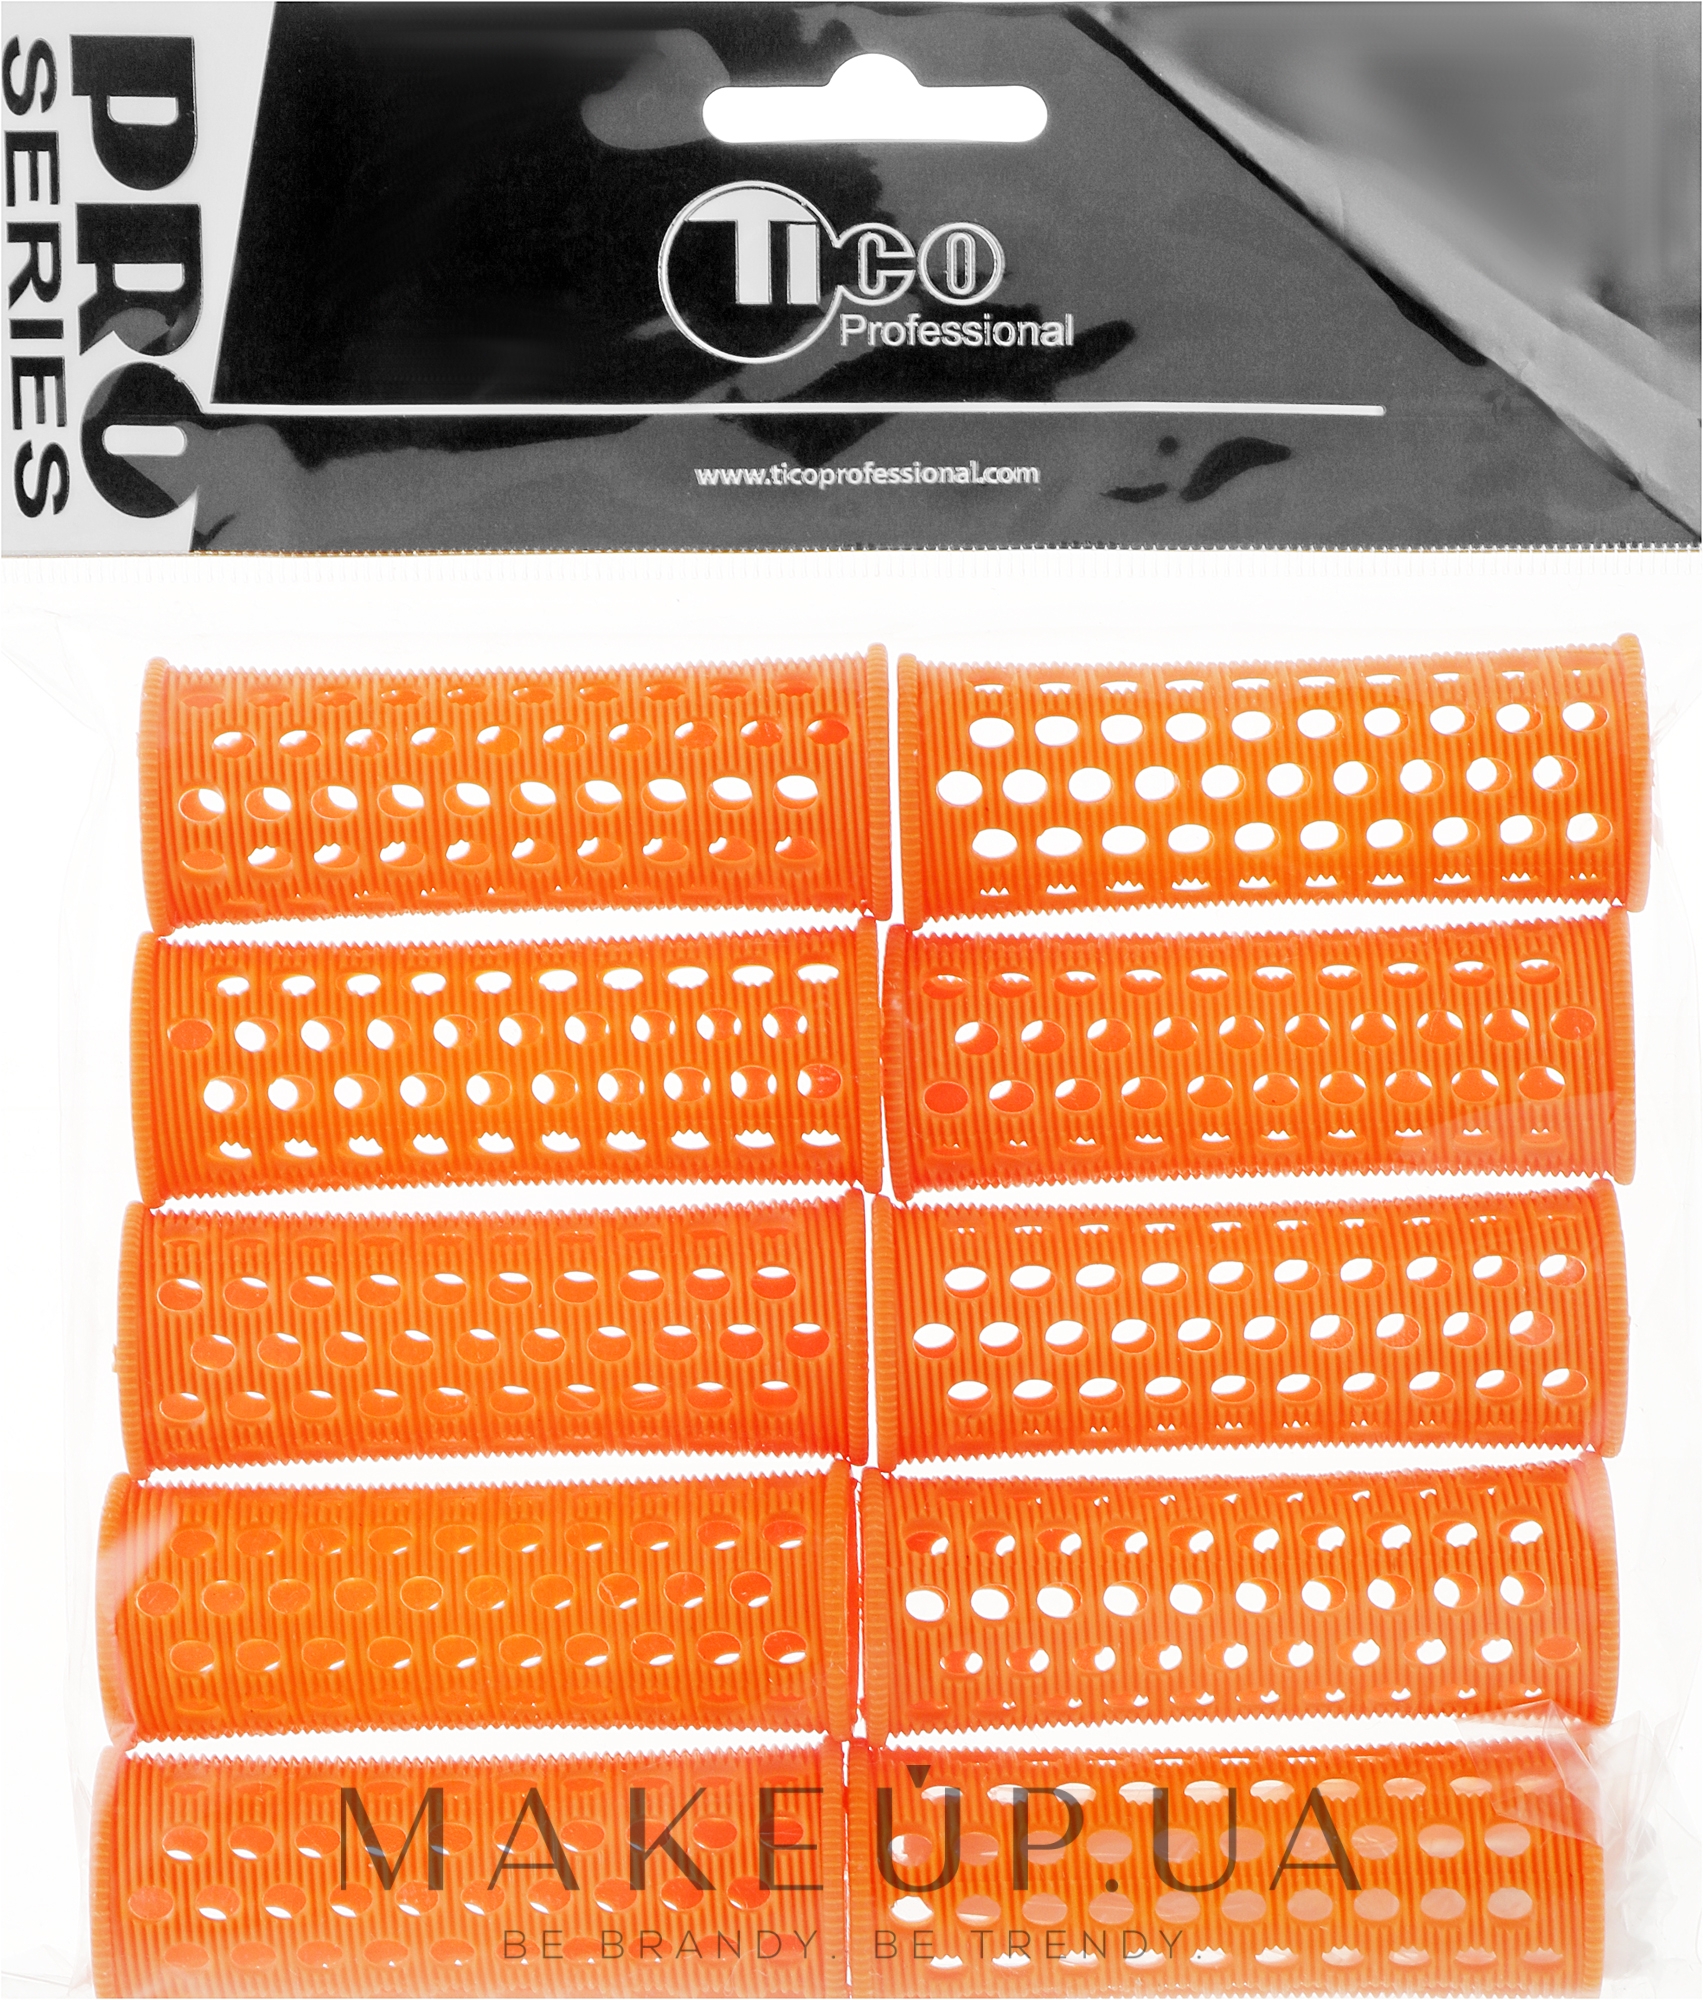 Бігуді пластикові, d23 мм, помаранчеві - Tico Professional — фото 10шт